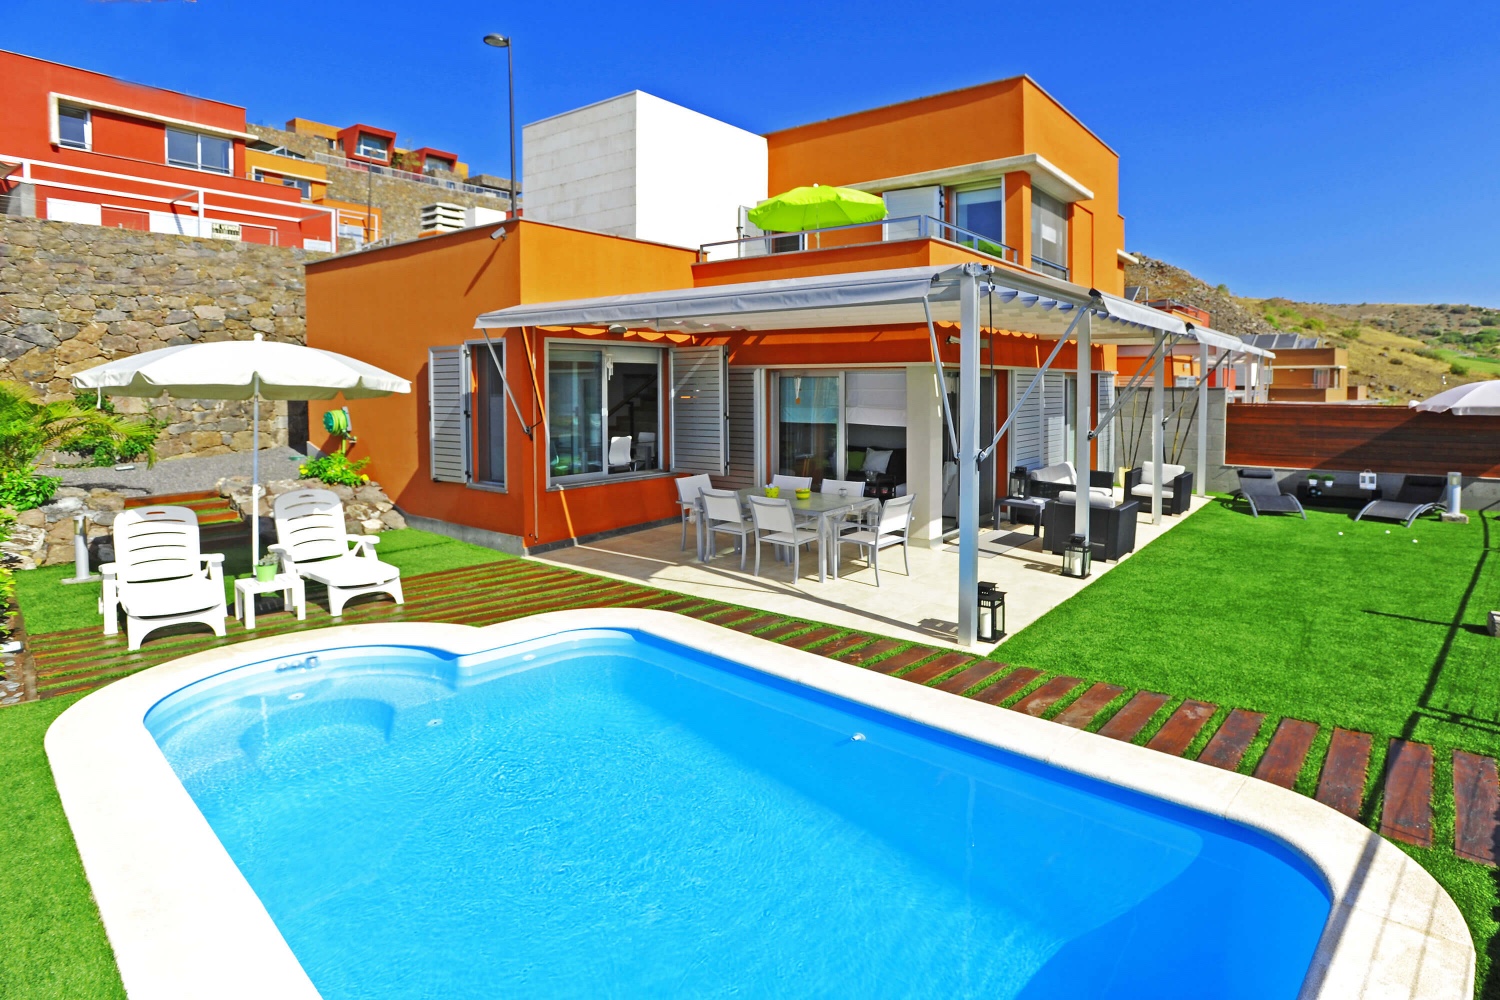 Haus im modernen Stil mit gutem Geschmack eingerichtet und einem angenehmen Außenbereich mit privatem beheiztem Pool